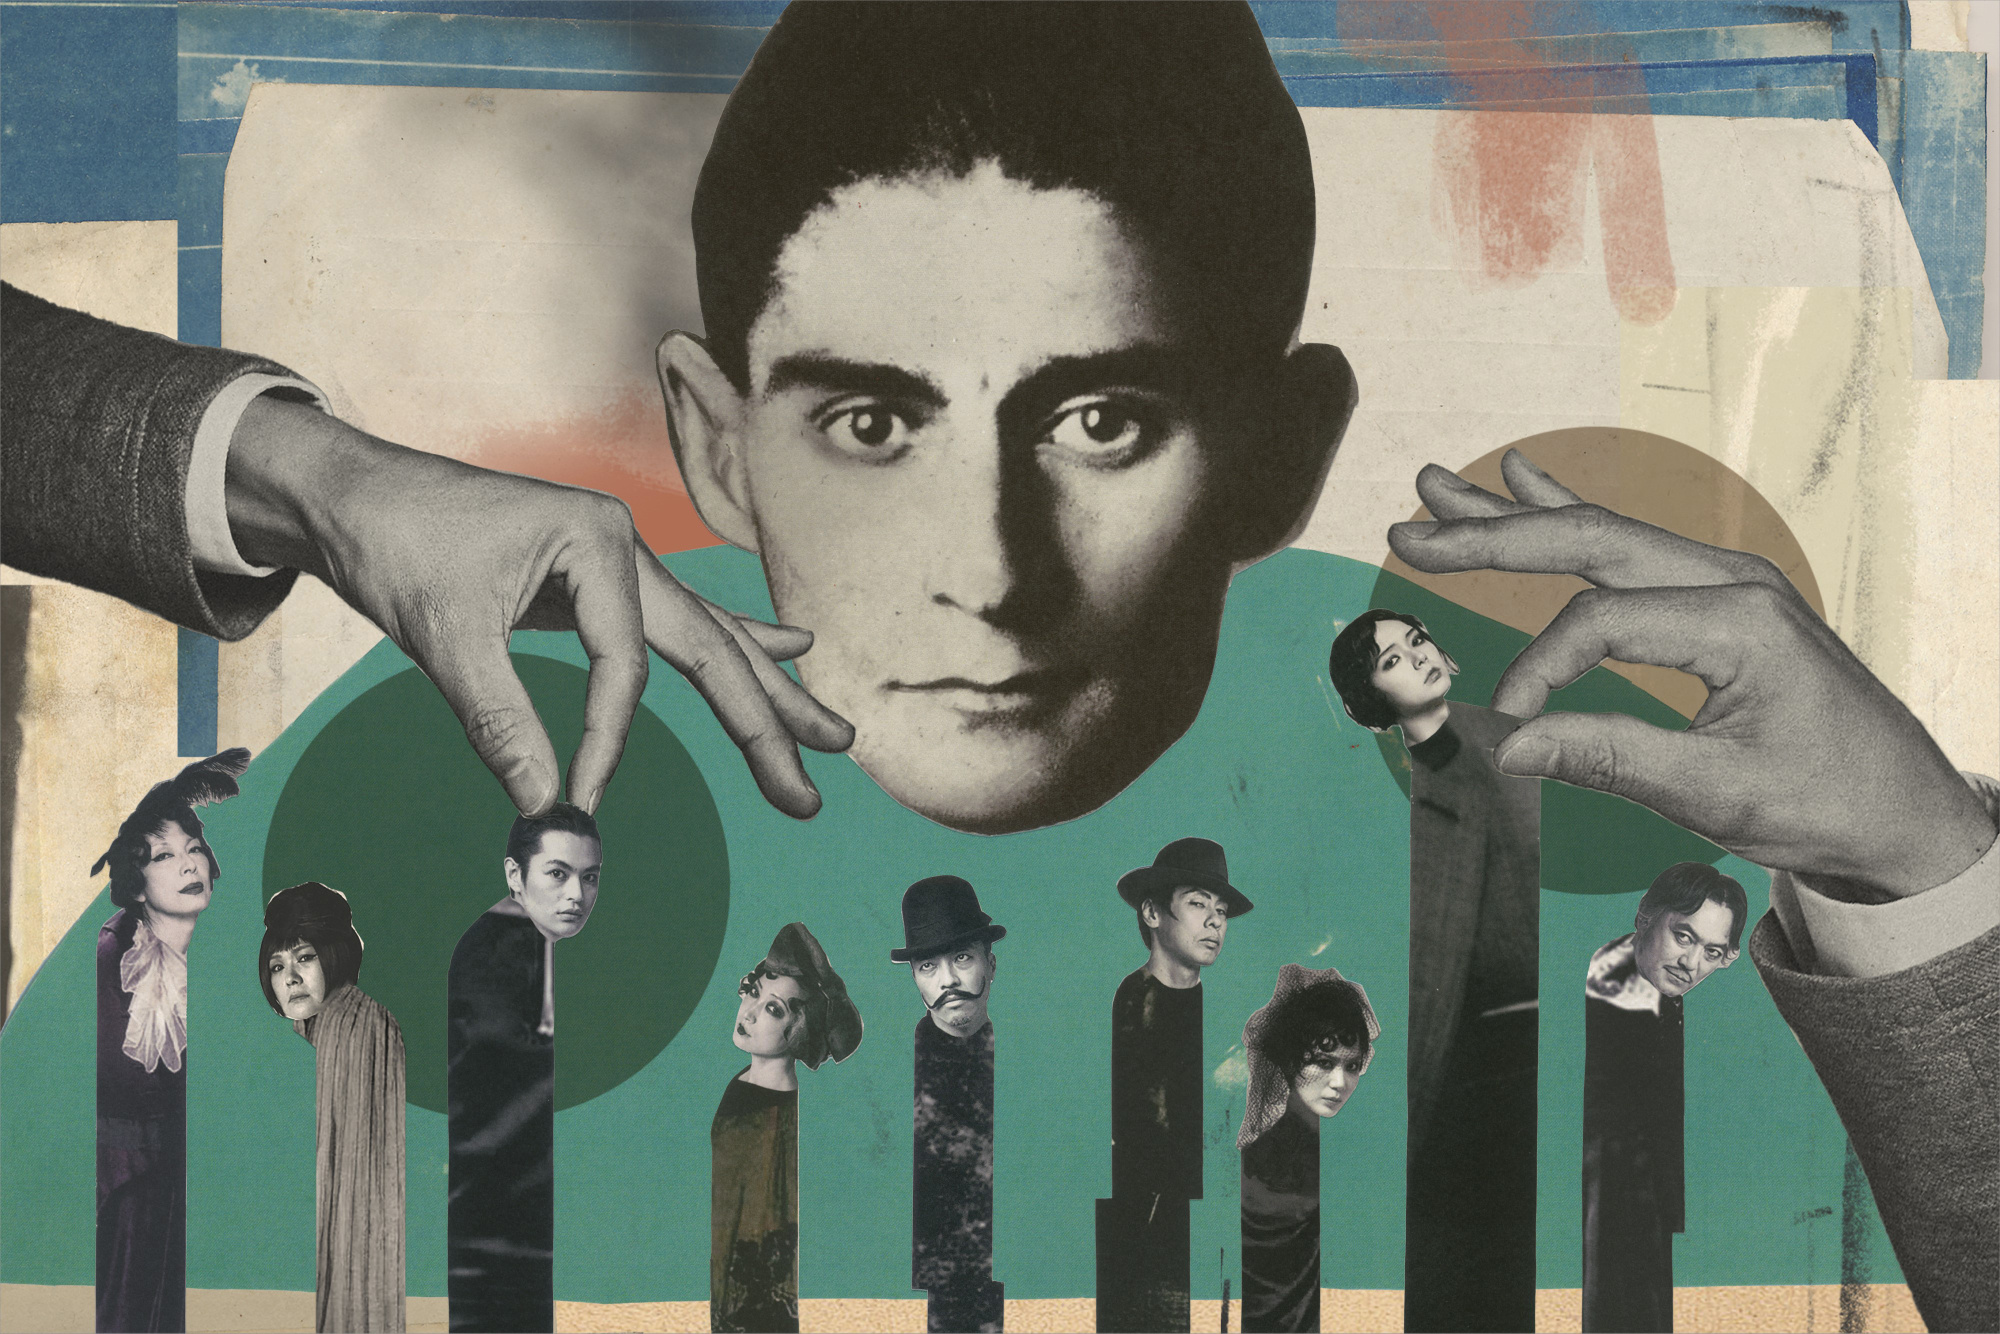 Franz Kafka Wallpapers (10+ images inside)